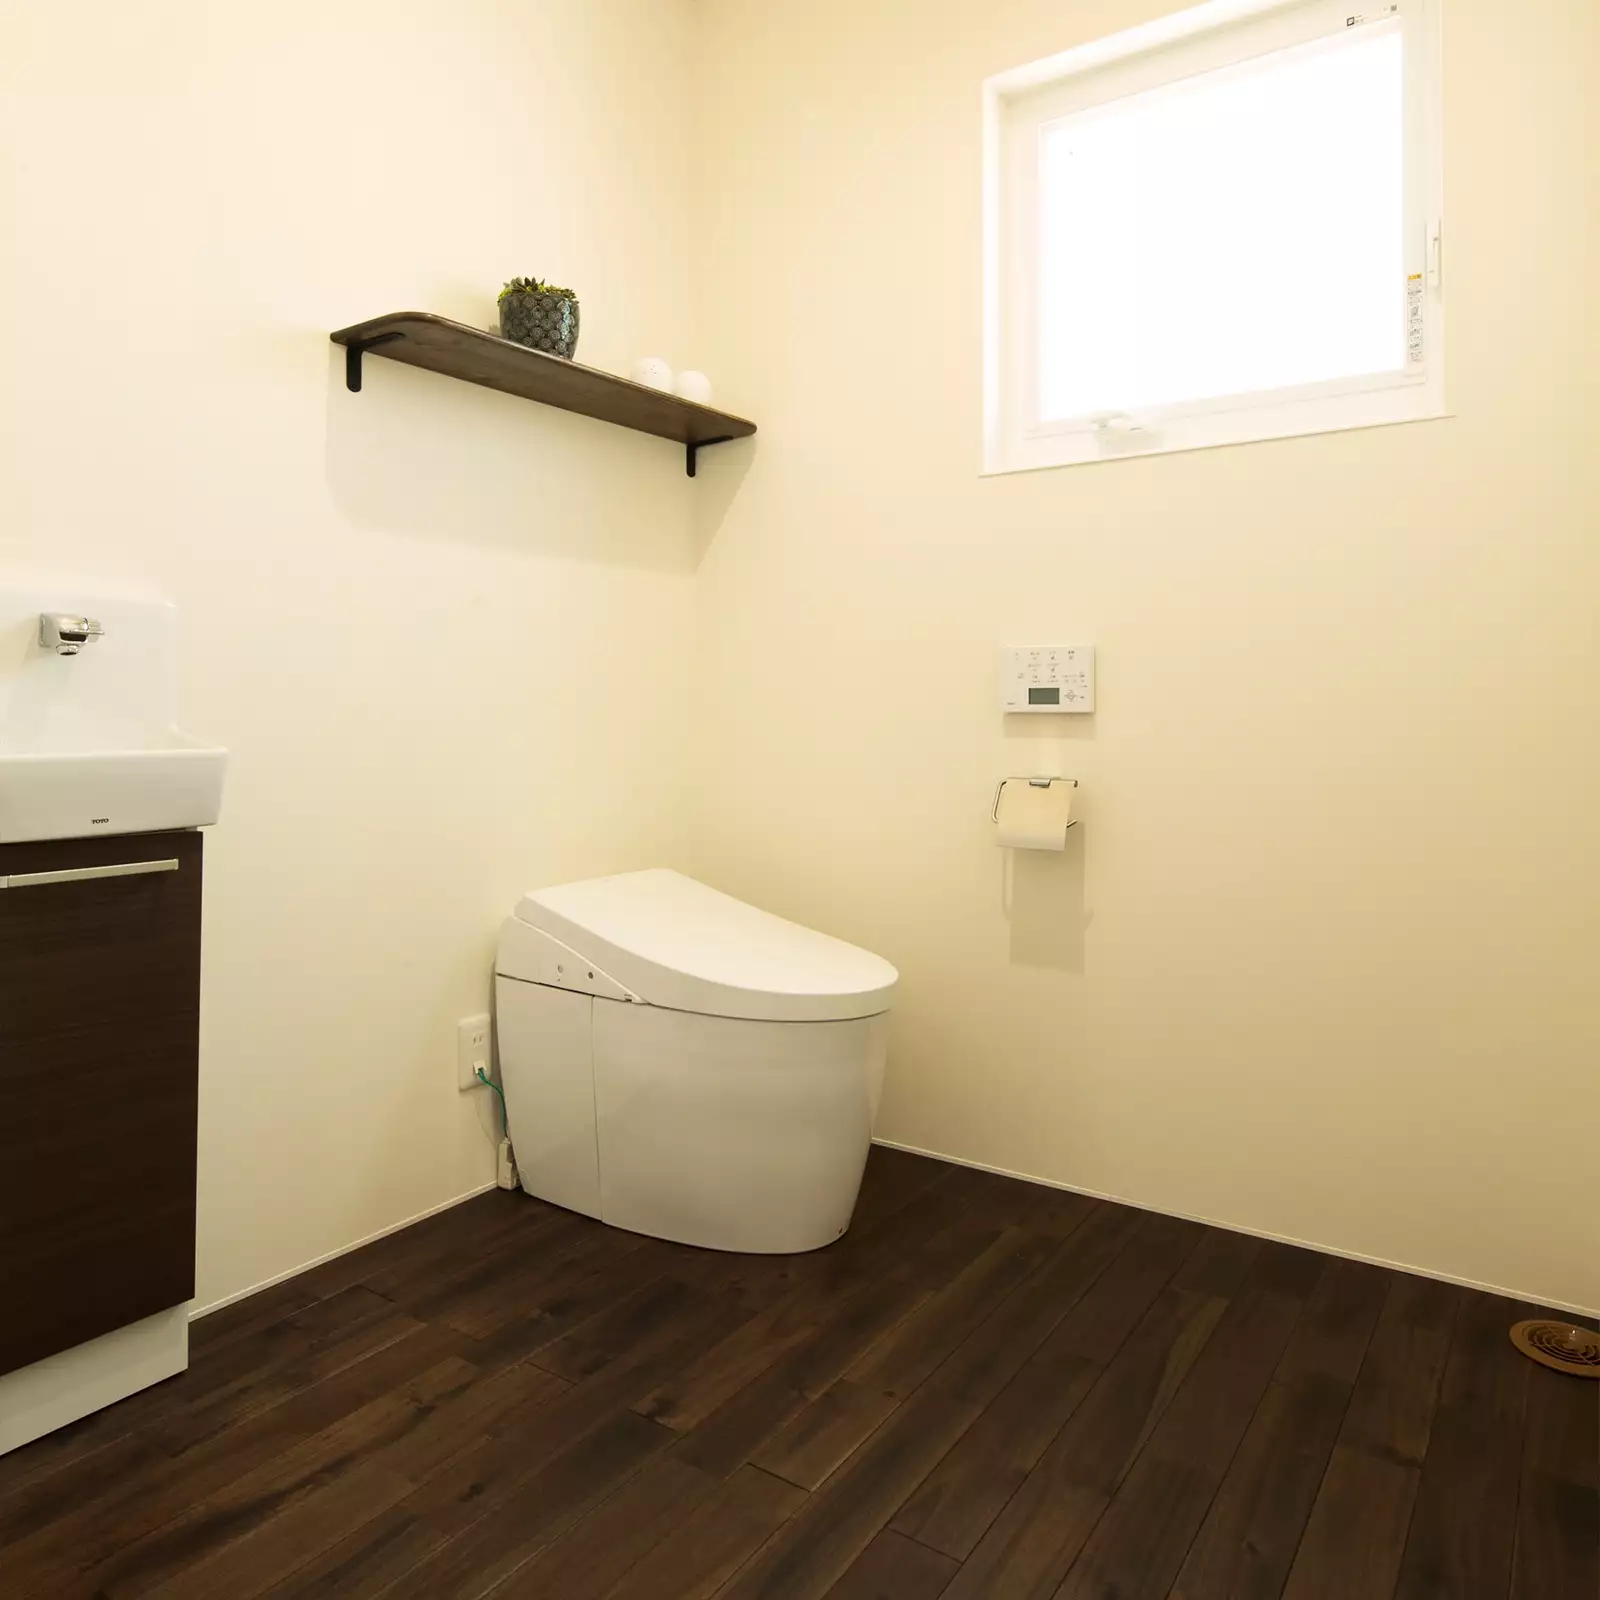 R+houseの物件のトイレの写真です。広々とした空間のトイレは車椅子でも動きやすい。便器の横には洗面台も設置。